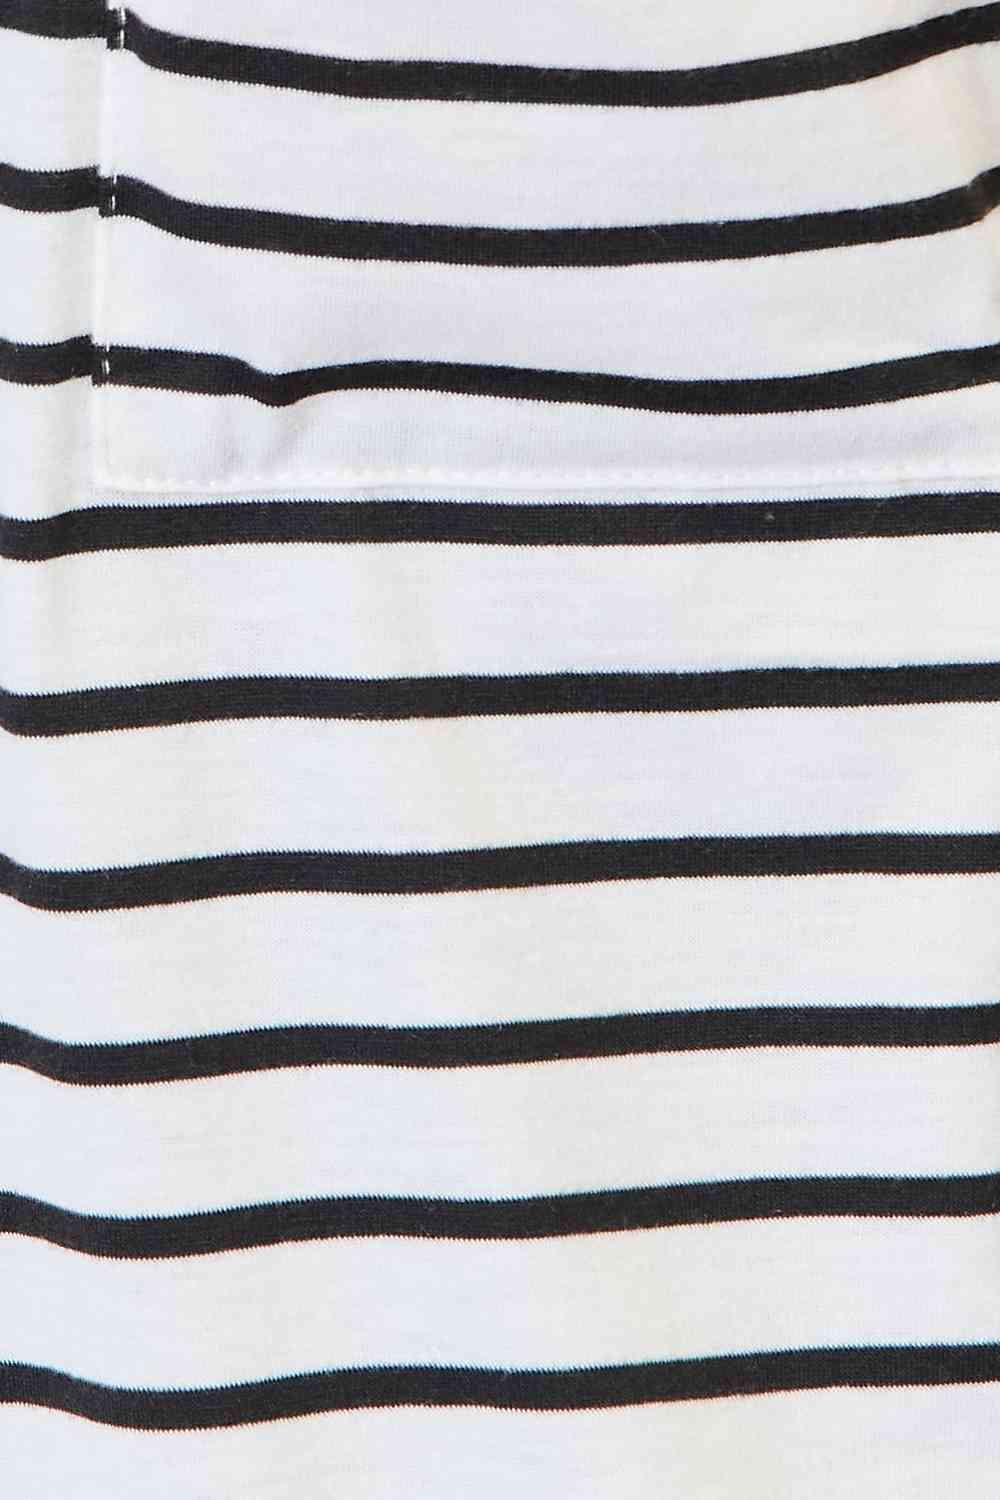 Women's Sweaters - Cardigans Double Take Striped Open Front Longline Cardigan